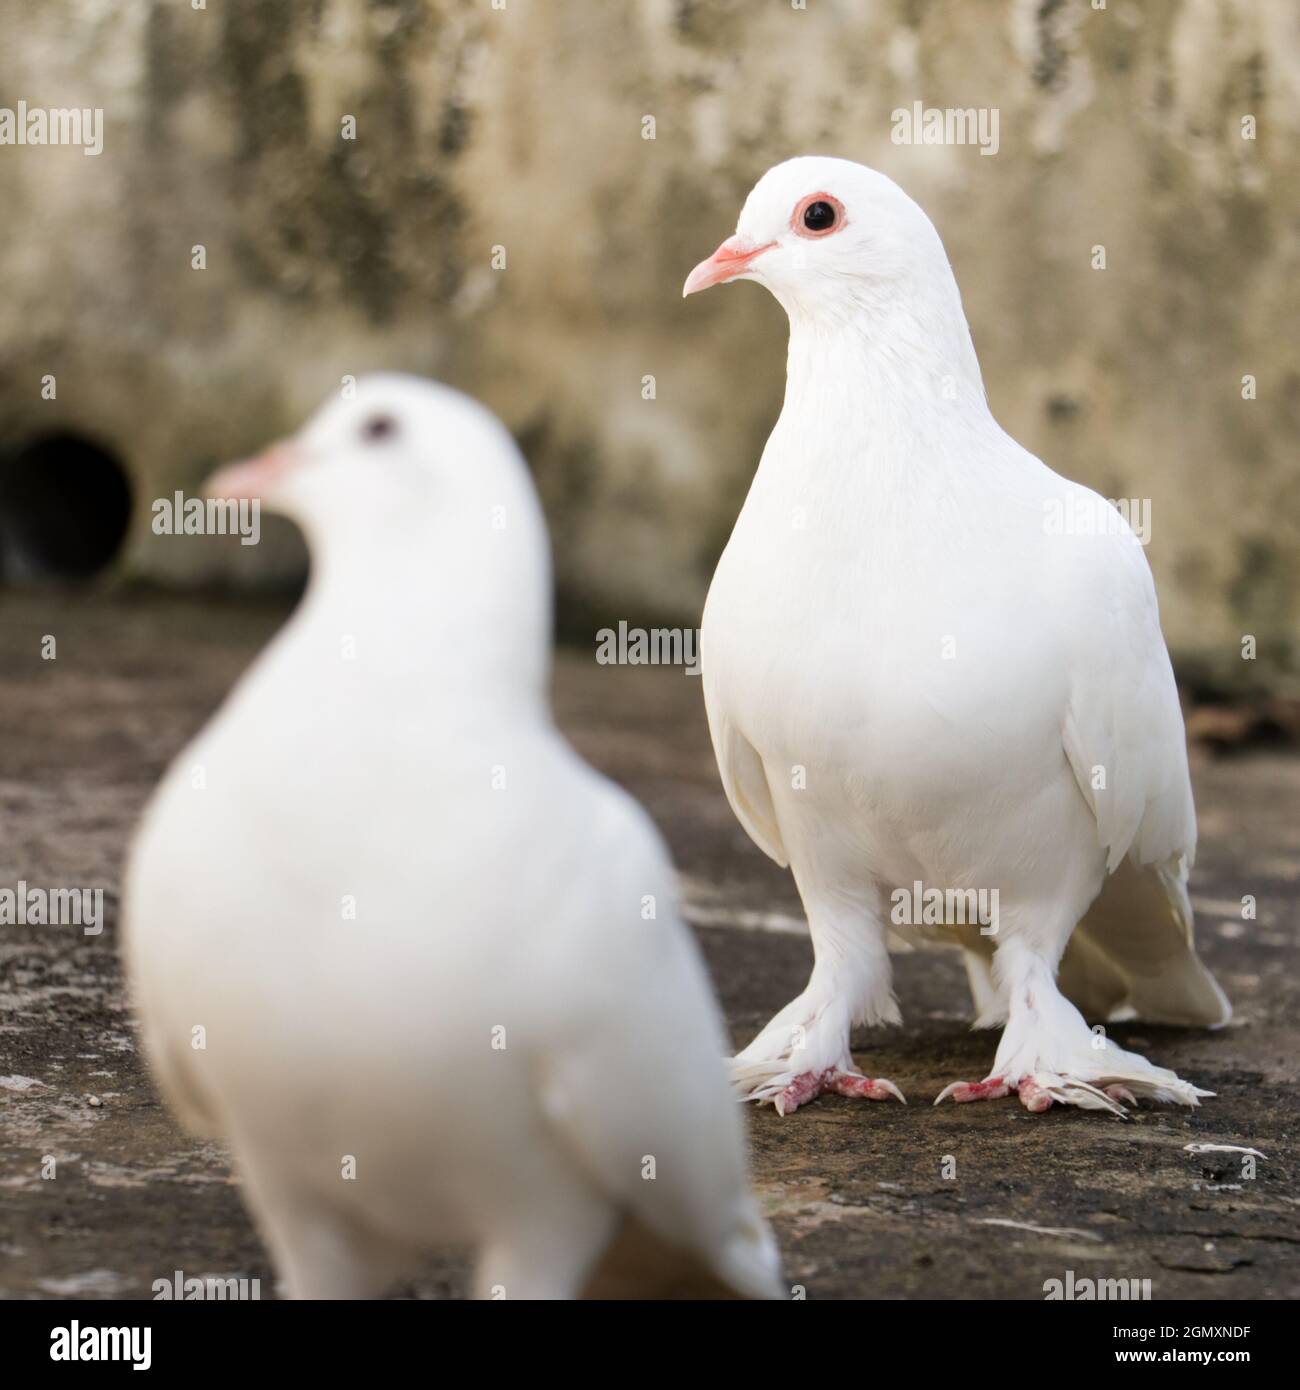 foto selectivamente enfocada con profundidad de campo de dos palomas domésticas con plumas blancas de pie mirando al mismo lado Foto de stock